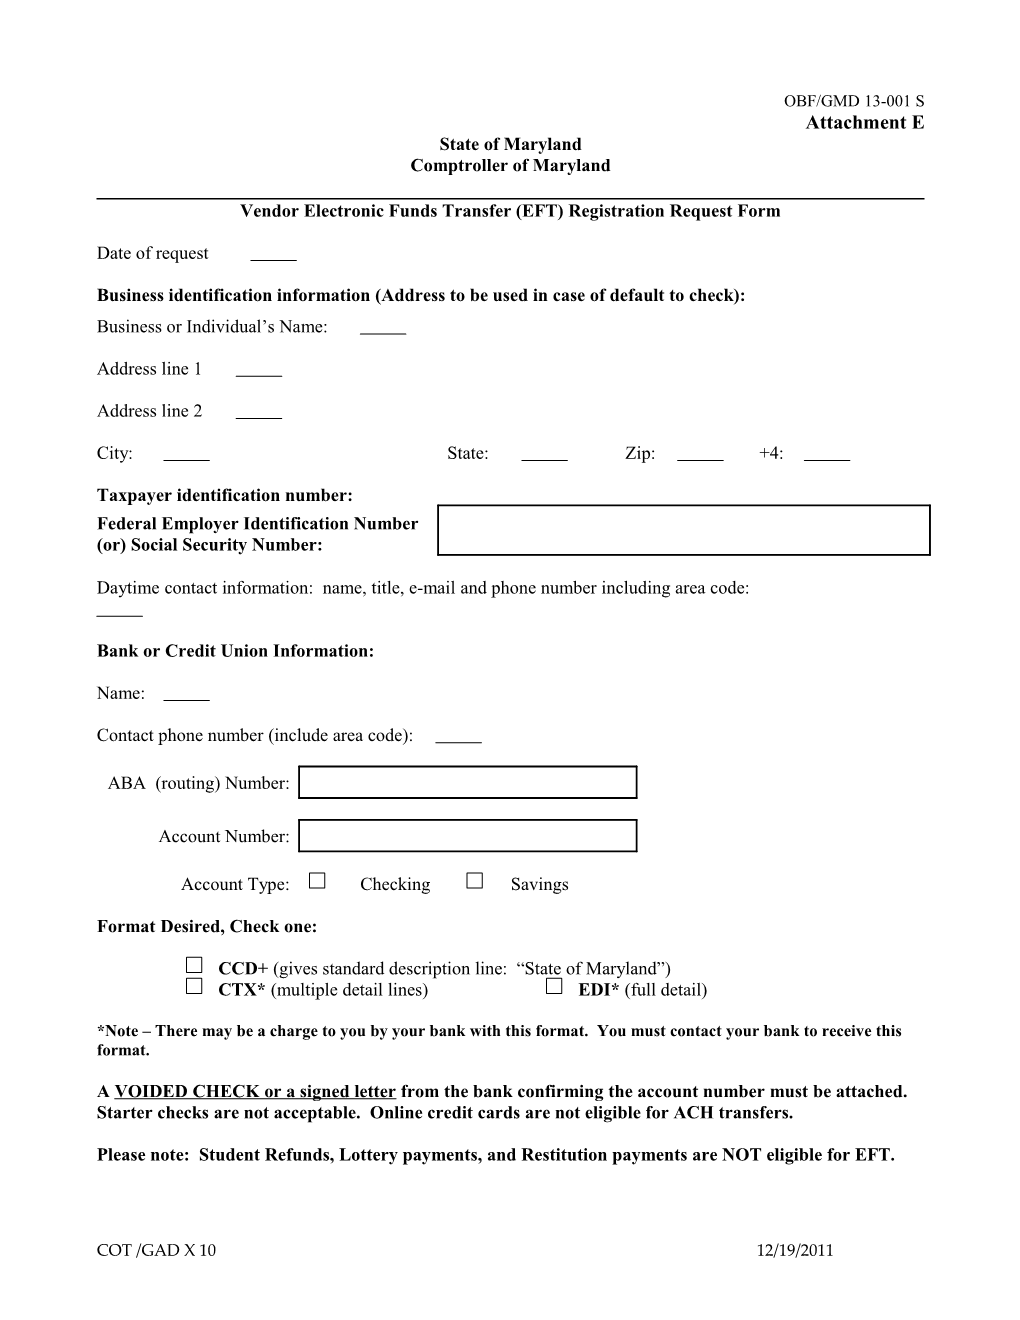 Vendor Electronic Funds Transfer (EFT) Registration Request Form